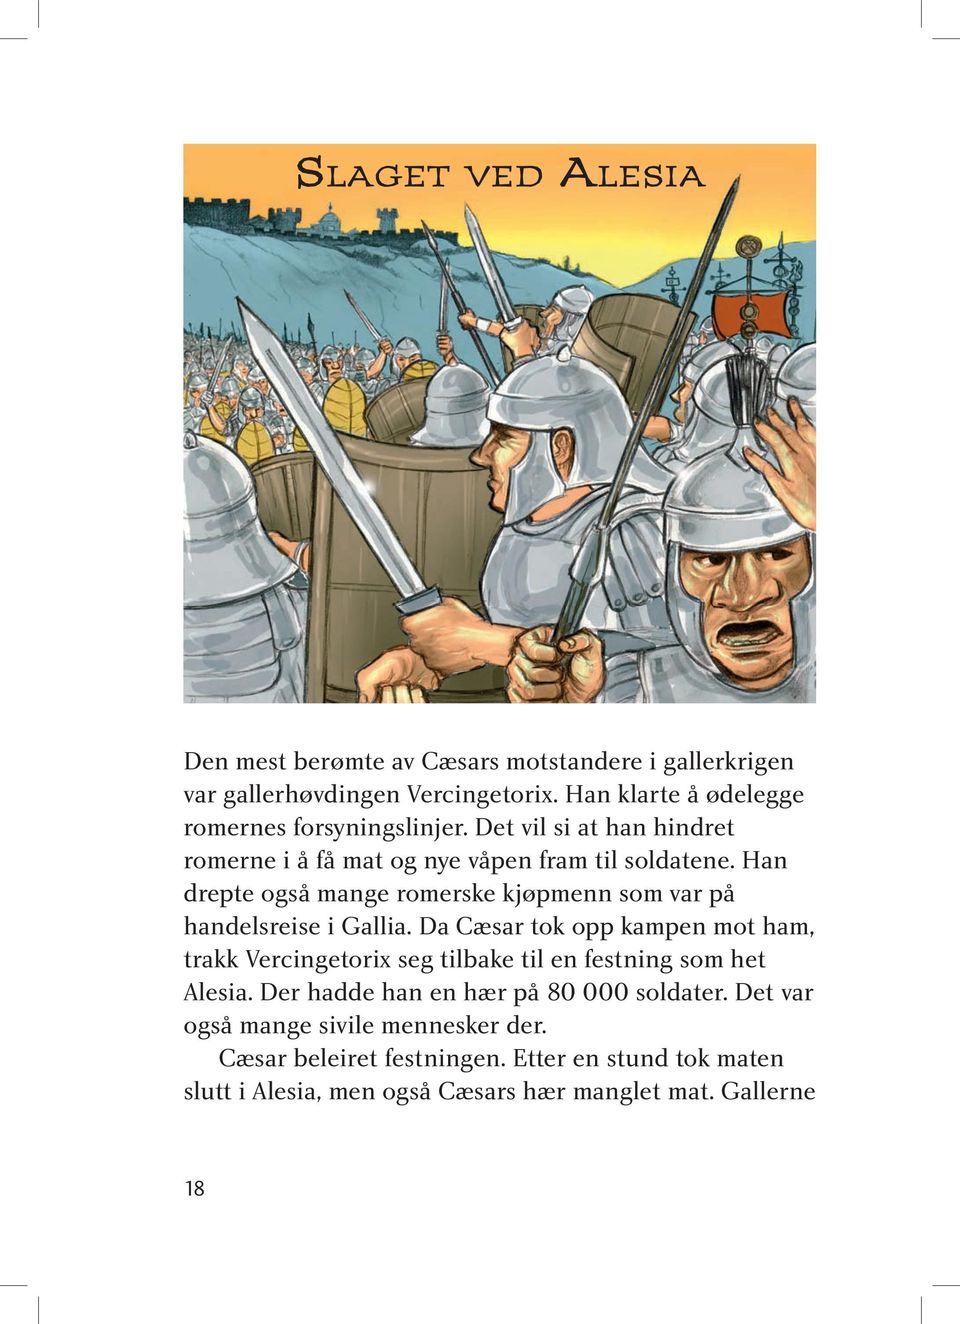 Han drepte også mange romerske kjøpmenn som var på handelsreise i Gallia.